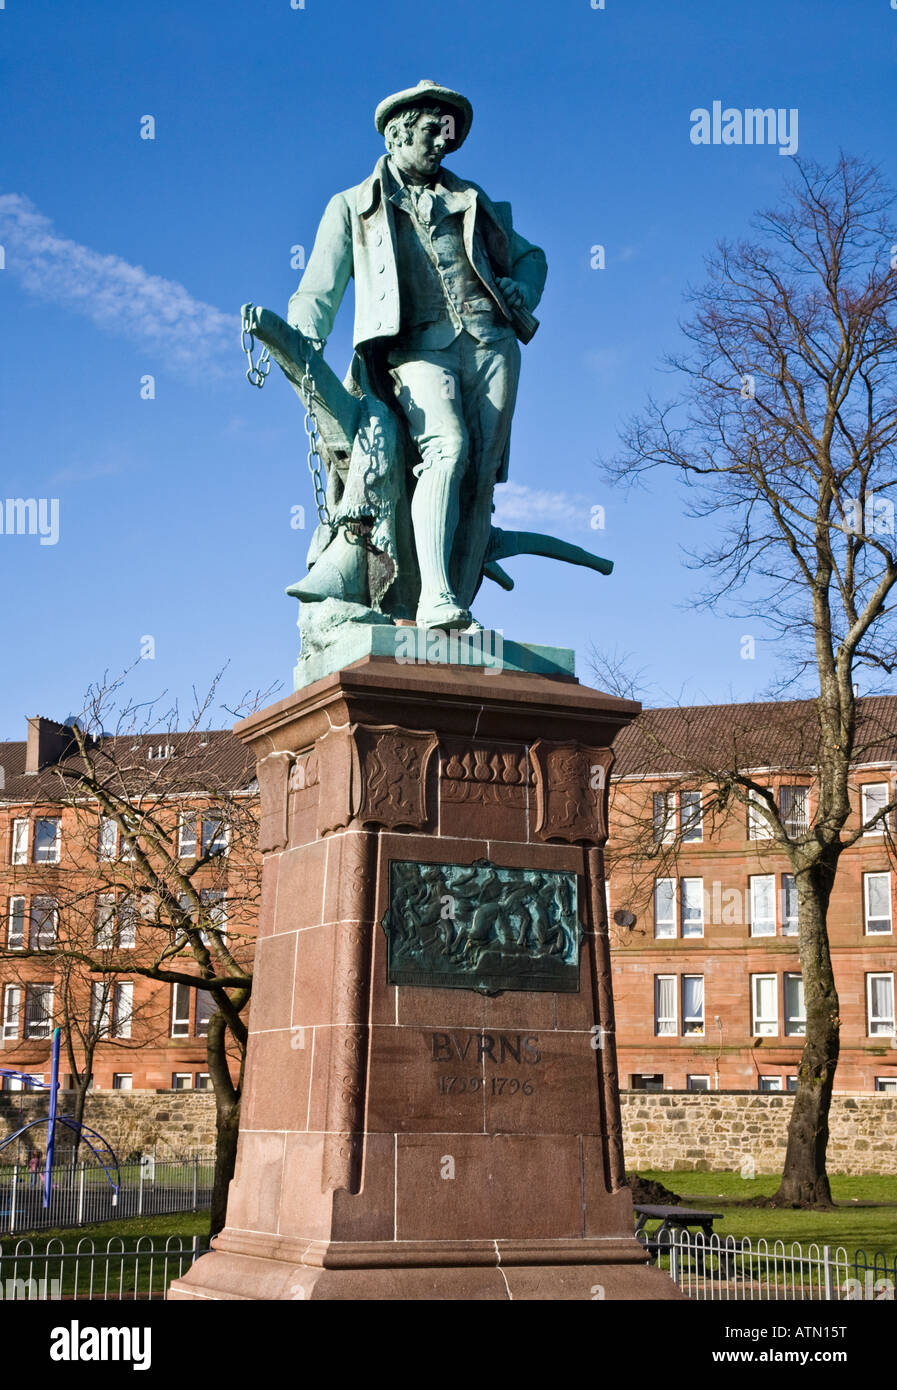 F. W. Pomeroy le populaire statue de Robert Burns 1759 -1796 poète national de l'Écosse Ecosse Jardins De La Fontaine Paisley. Banque D'Images